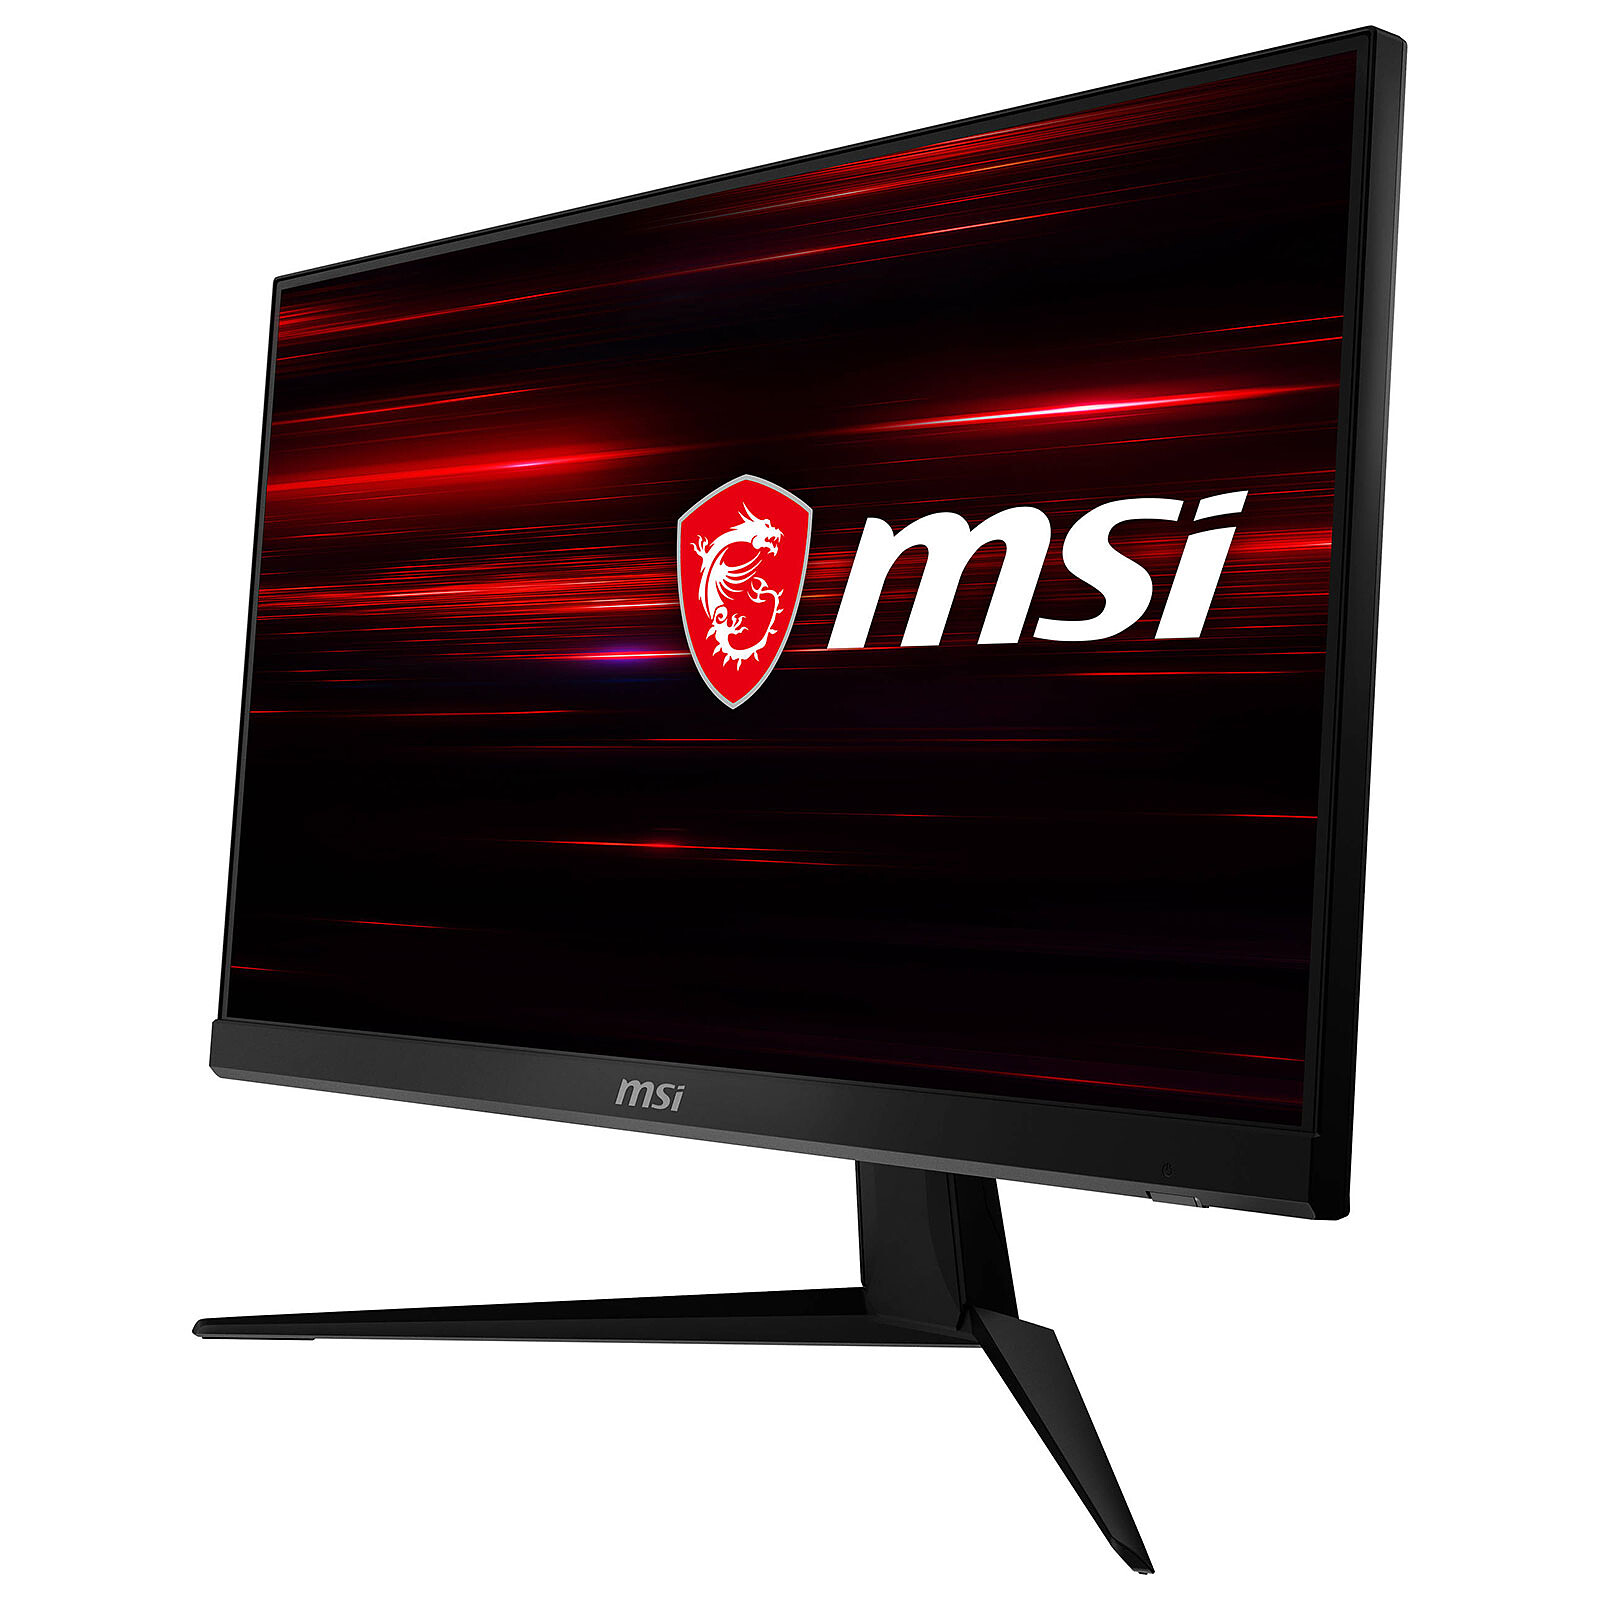 MSI 23.8 LED - Optix G241 - PC monitor - LDLC 3-year warranty